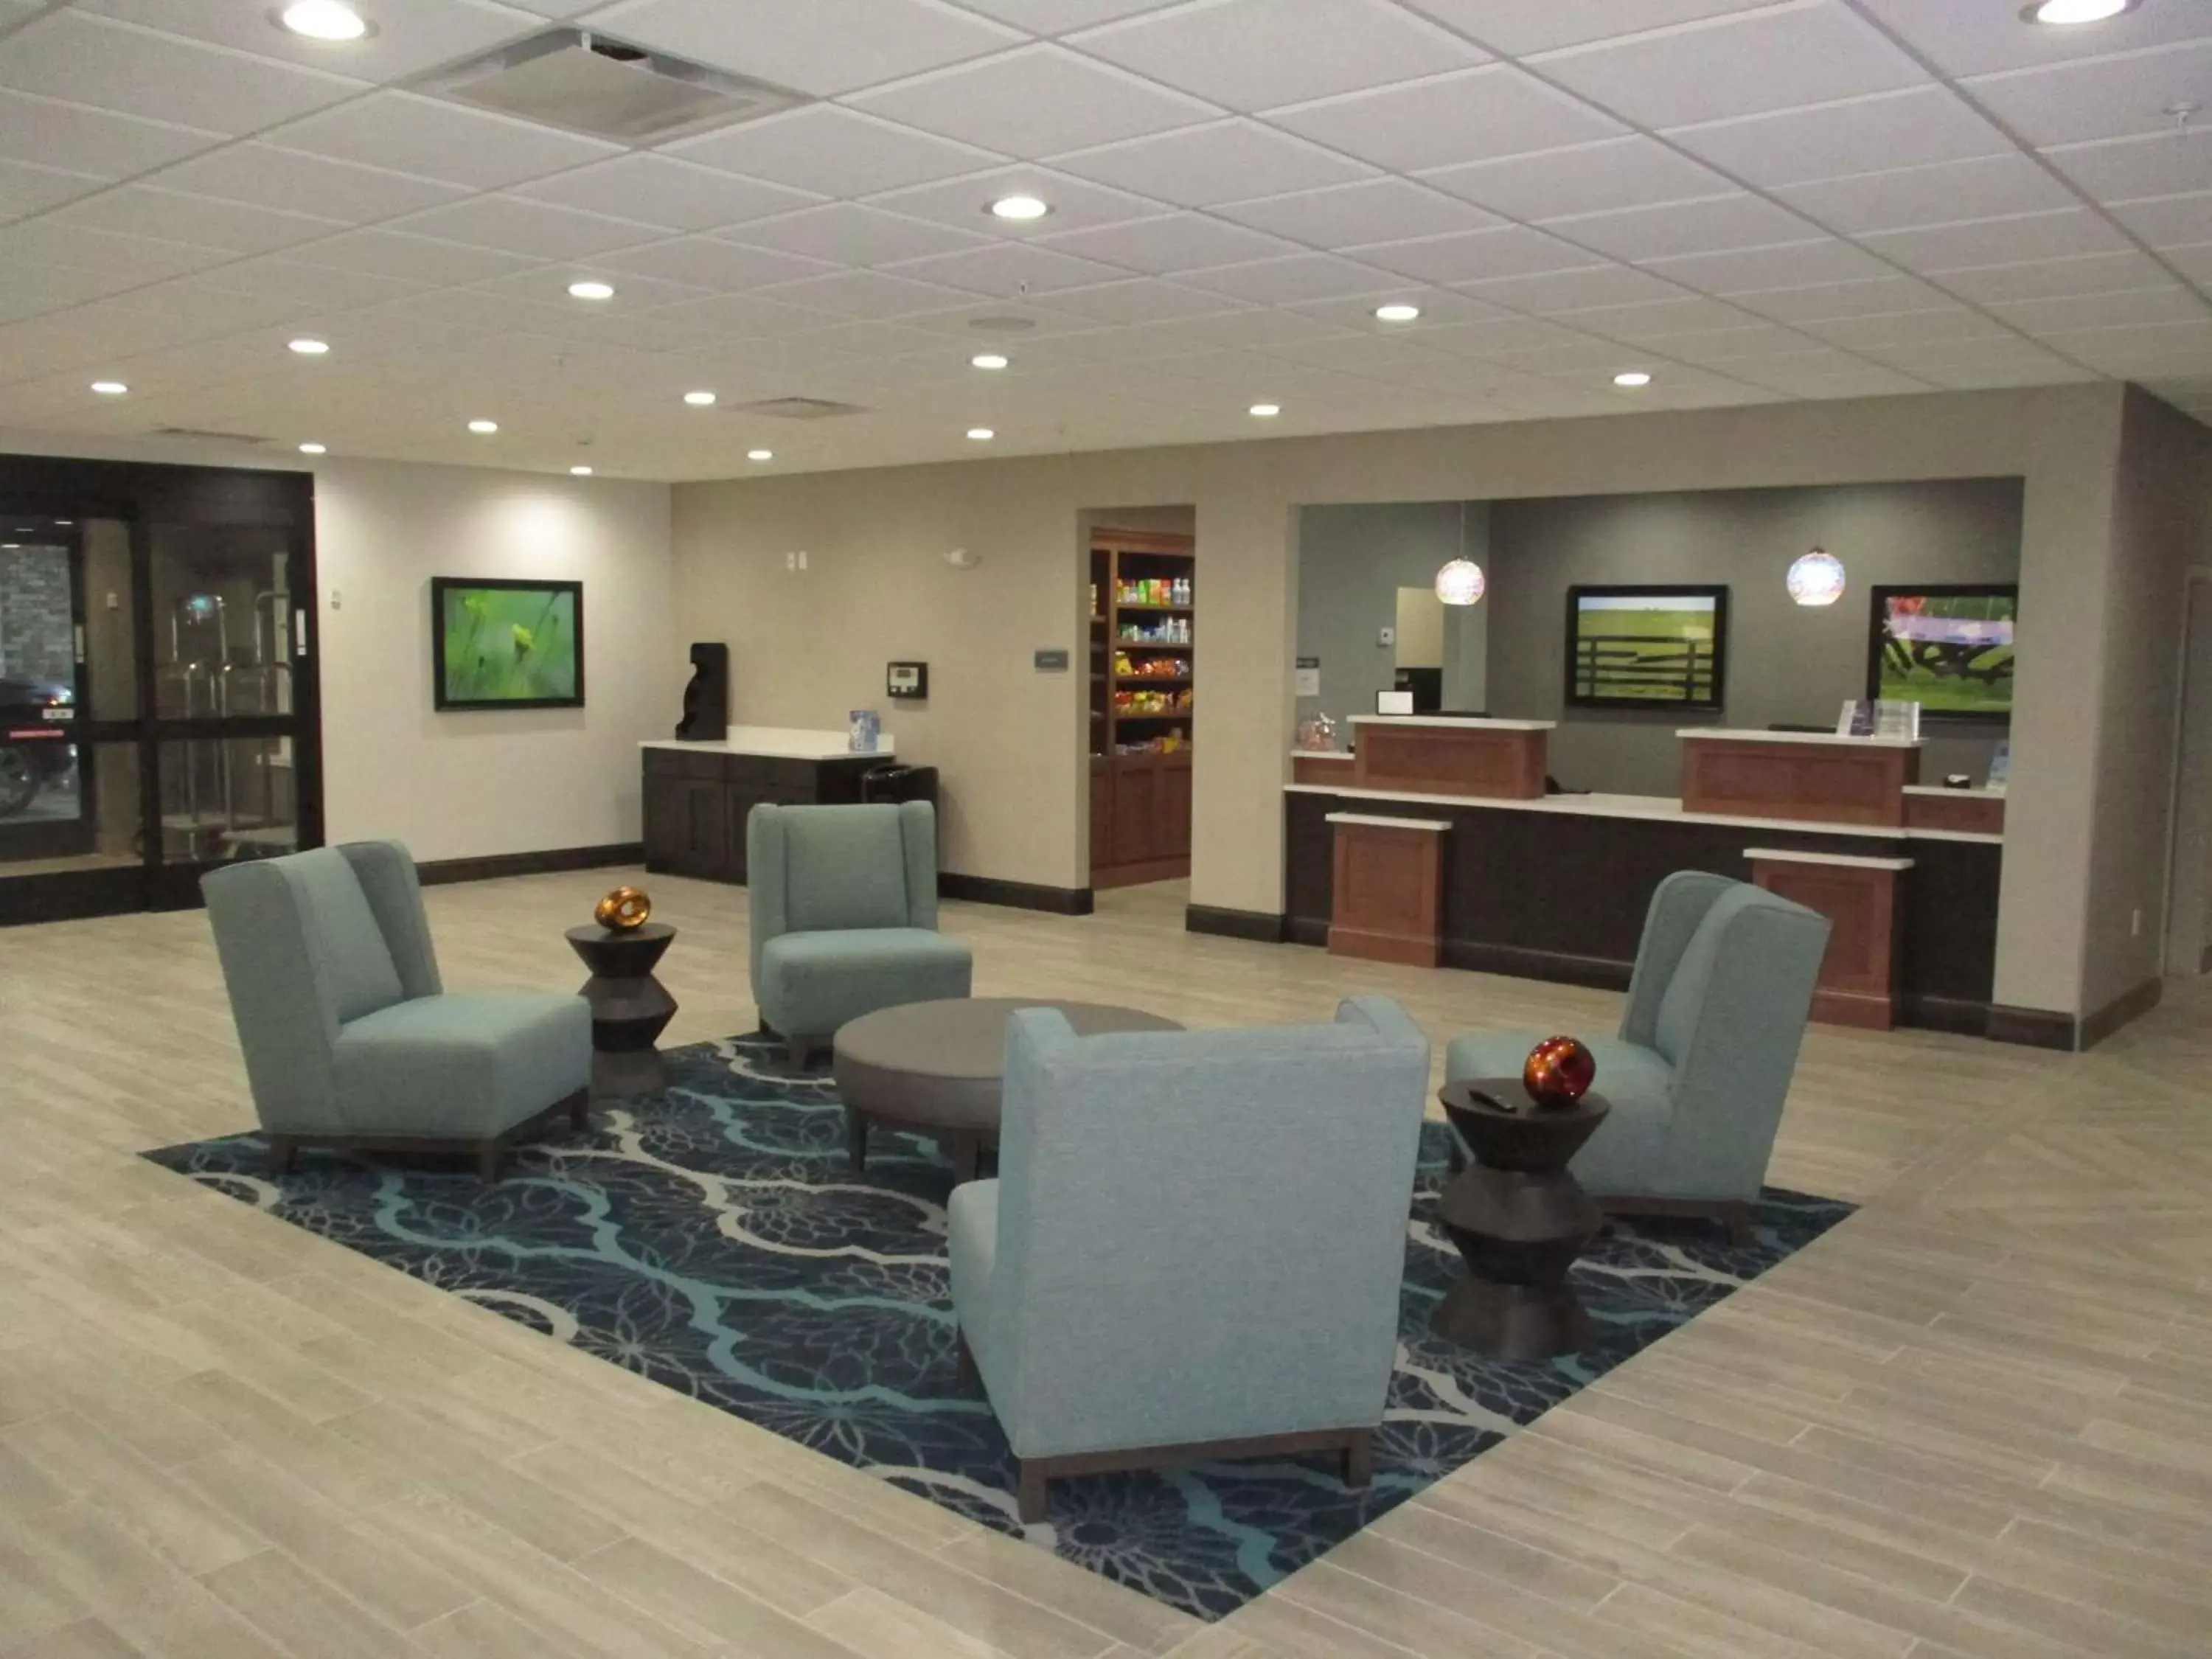 Lobby or reception, Lobby/Reception in Best Western Plus Owensboro